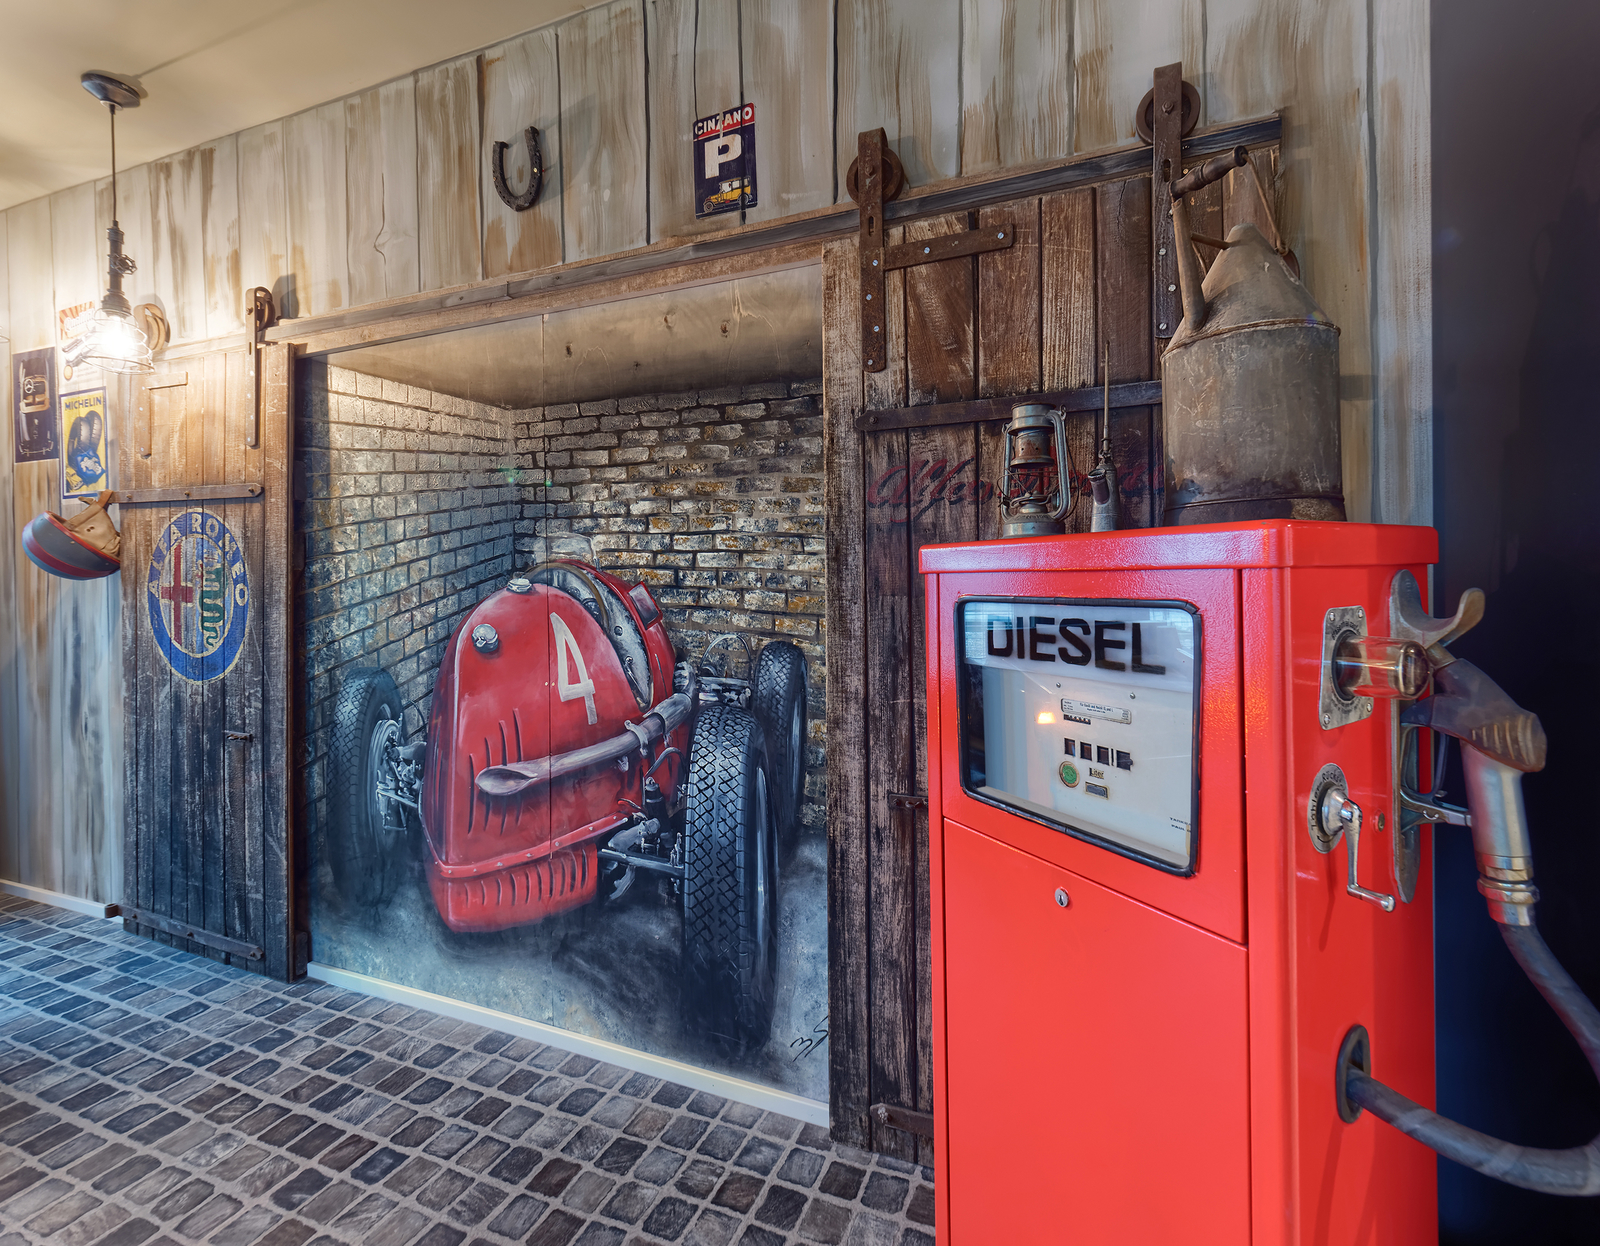 Wand des Scheunenfund-Autozimmers mit Rennauto in einer Scheune sowie einer roten Diesel-Zapfsäule im Vordergrund.